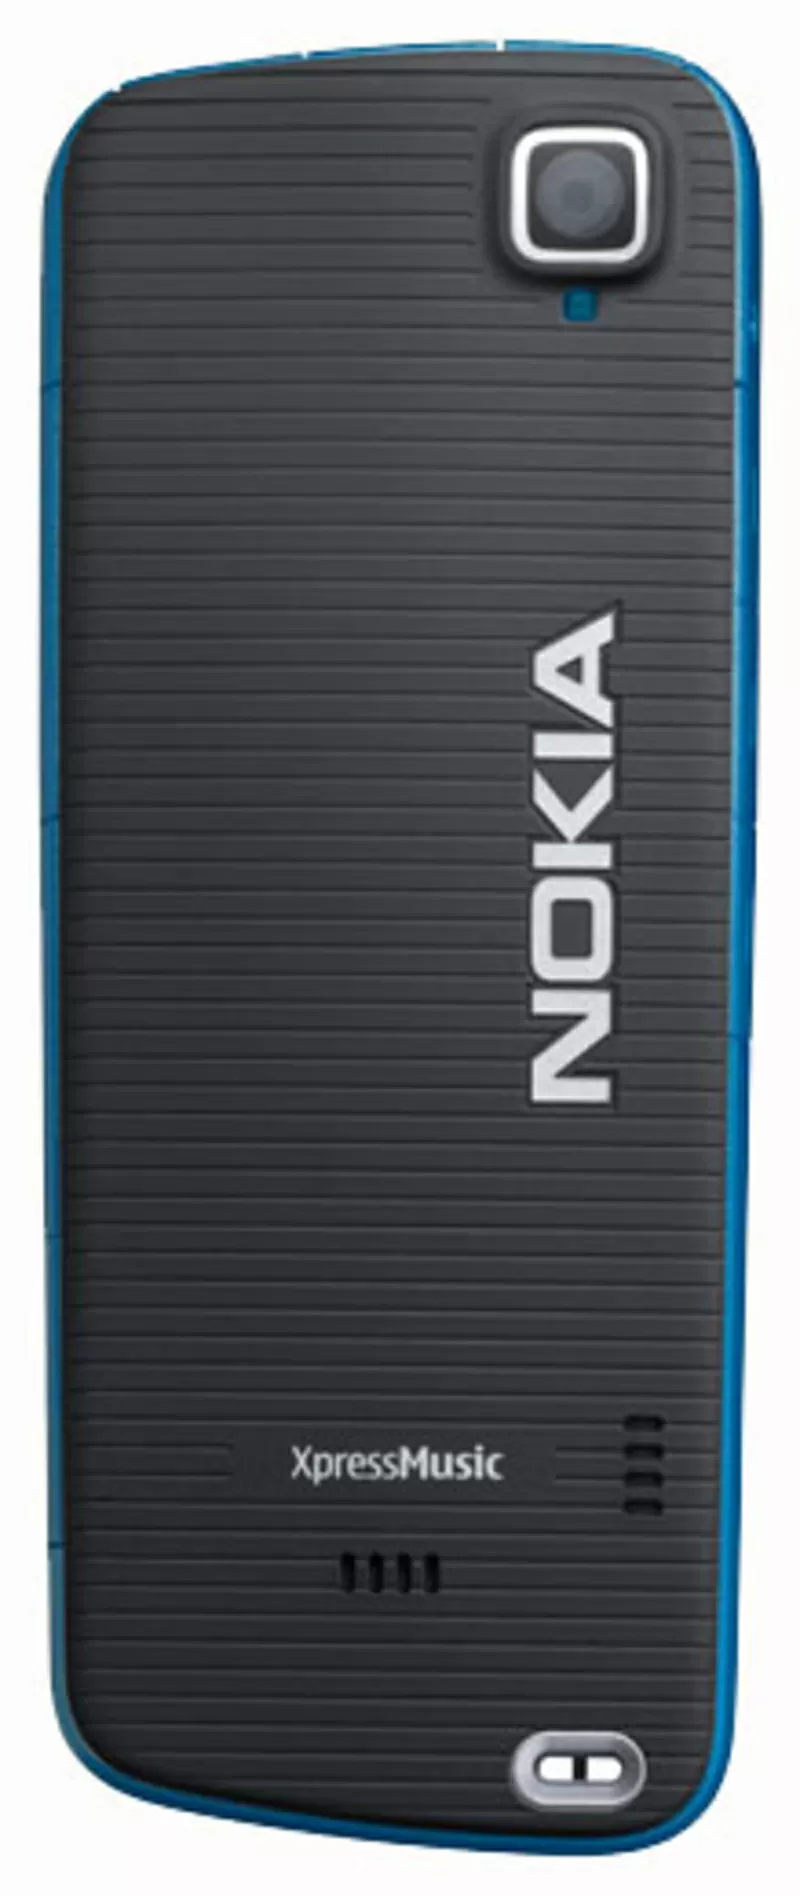 Nokia XpressMusic 5220 ORIGINAL! 2